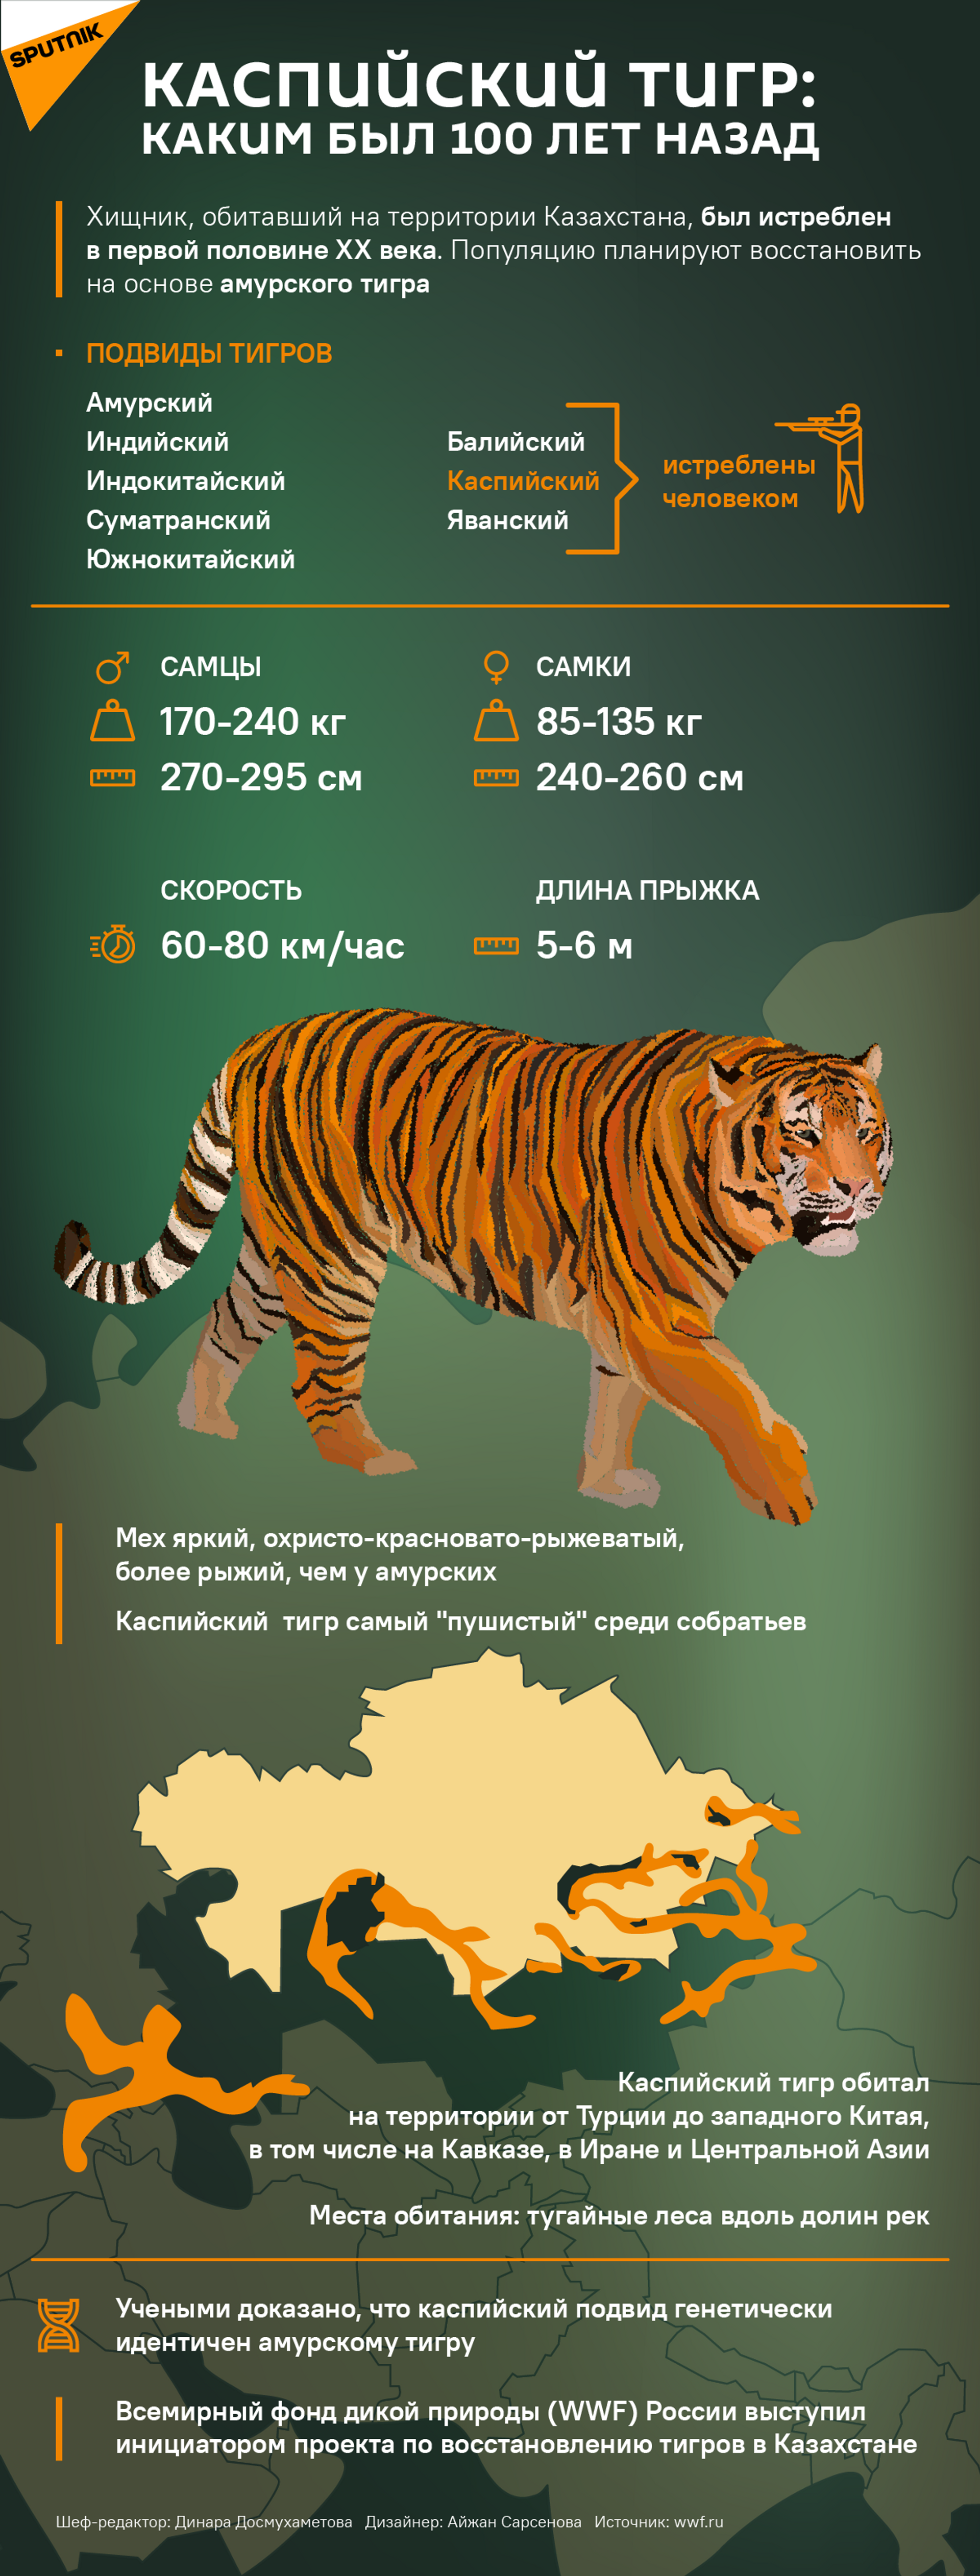 Откуда в Казахстане возьмут туранских тигров, если они все истреблены - Sputnik Казахстан, 1920, 01.10.2021